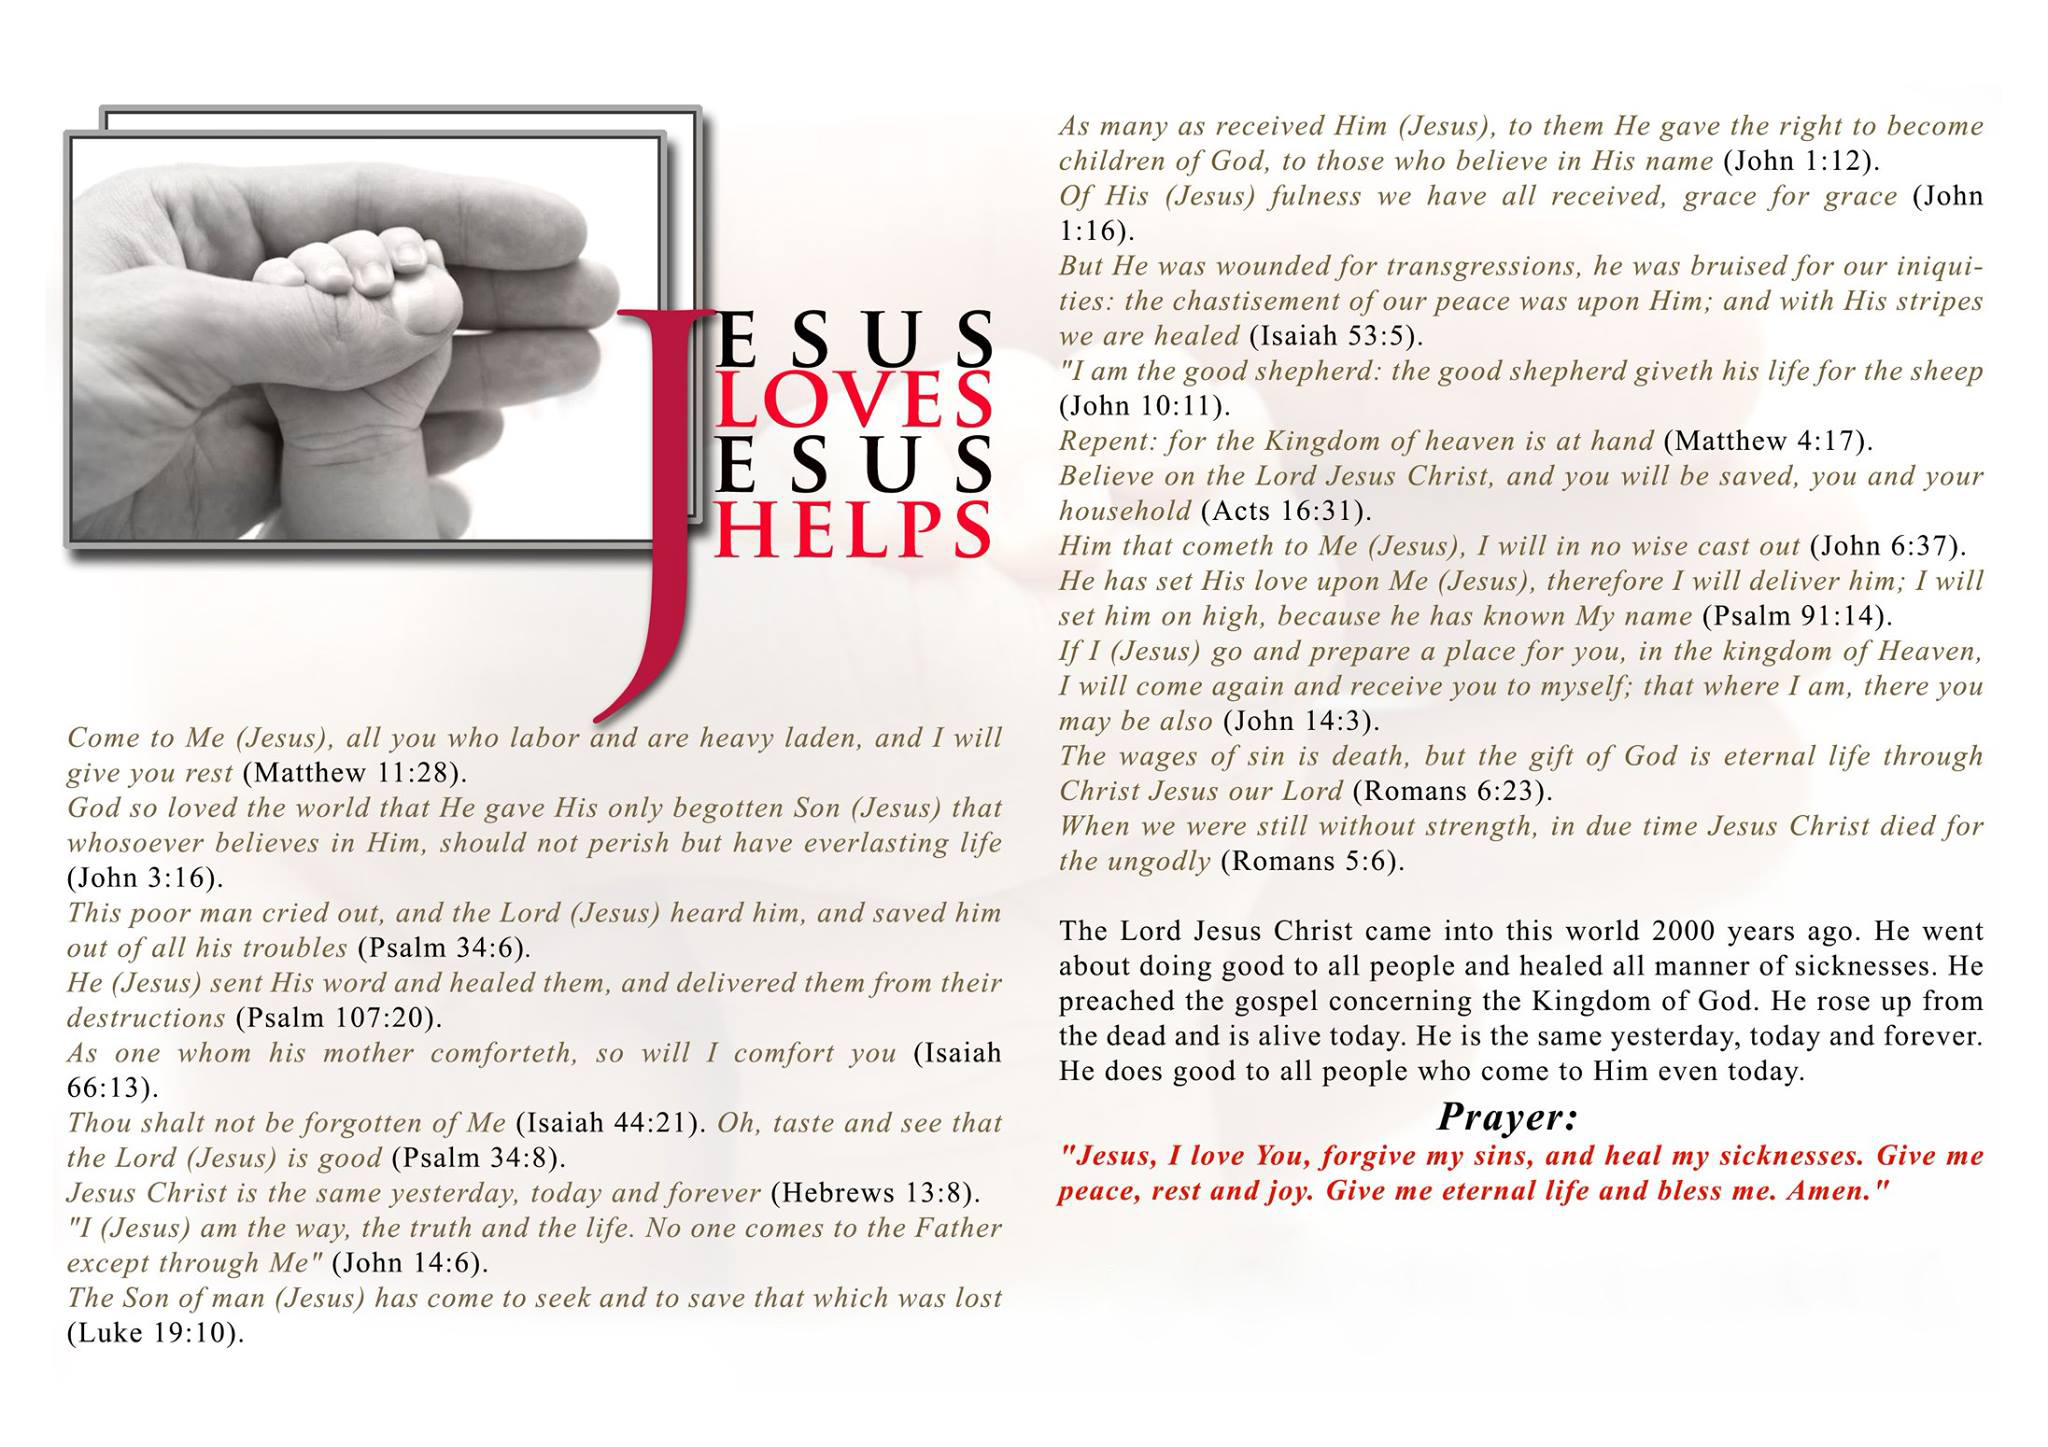 Jesus-Loves-Jesus-Helps11